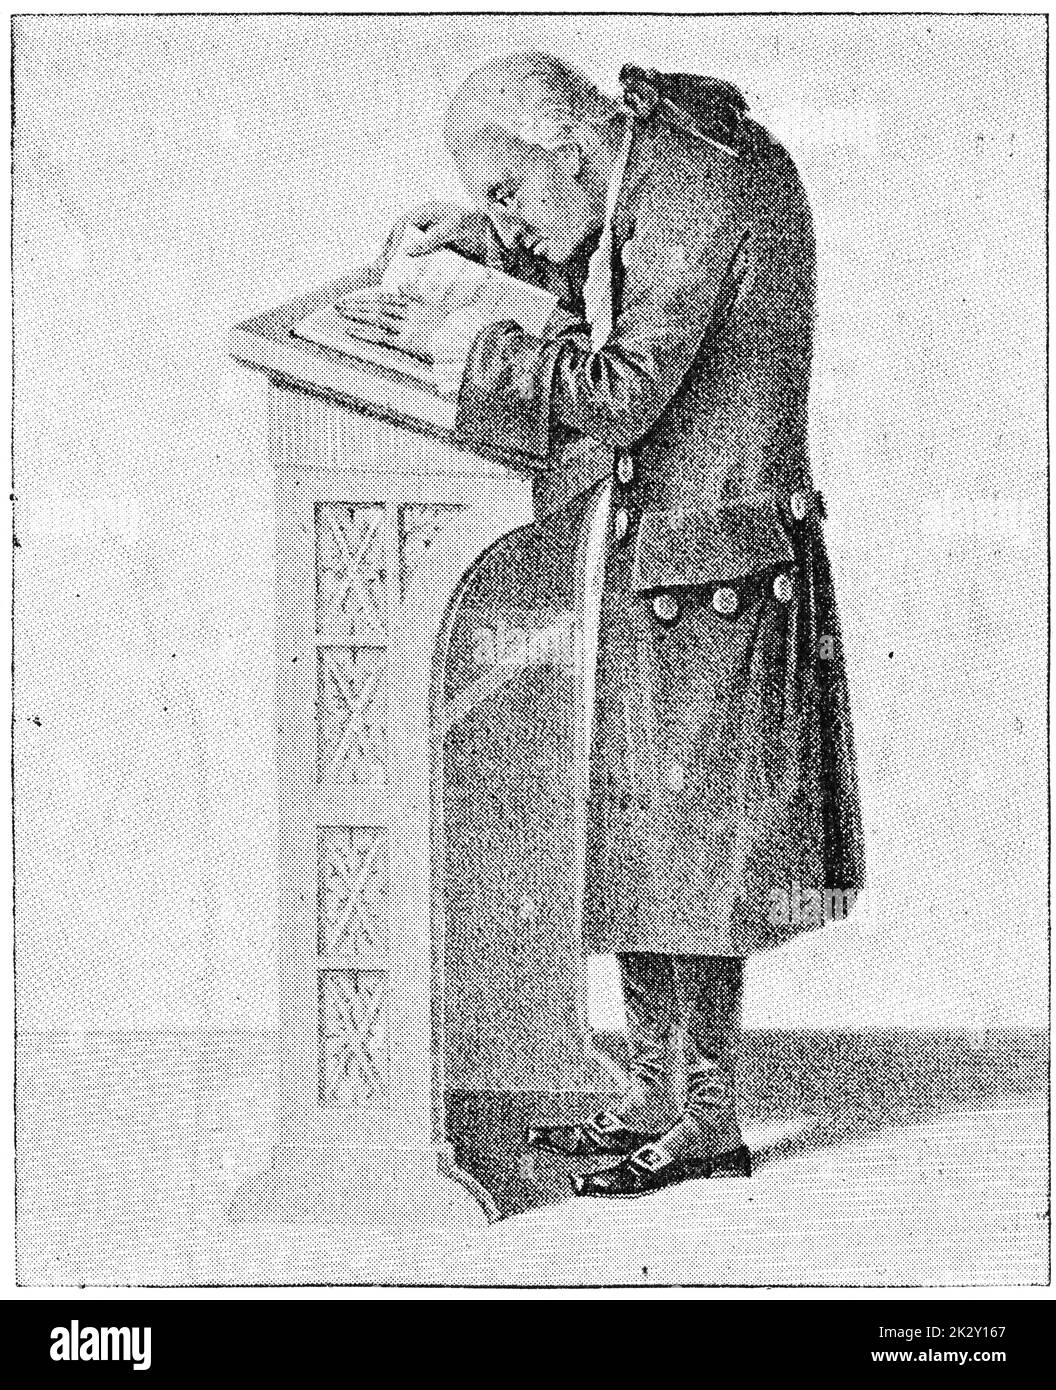 Portrait d'Emmanuel Kant - un philosophe allemand et l'un des penseurs centraux des Lumières. Illustration du 19e siècle. Allemagne. Arrière-plan blanc. Banque D'Images